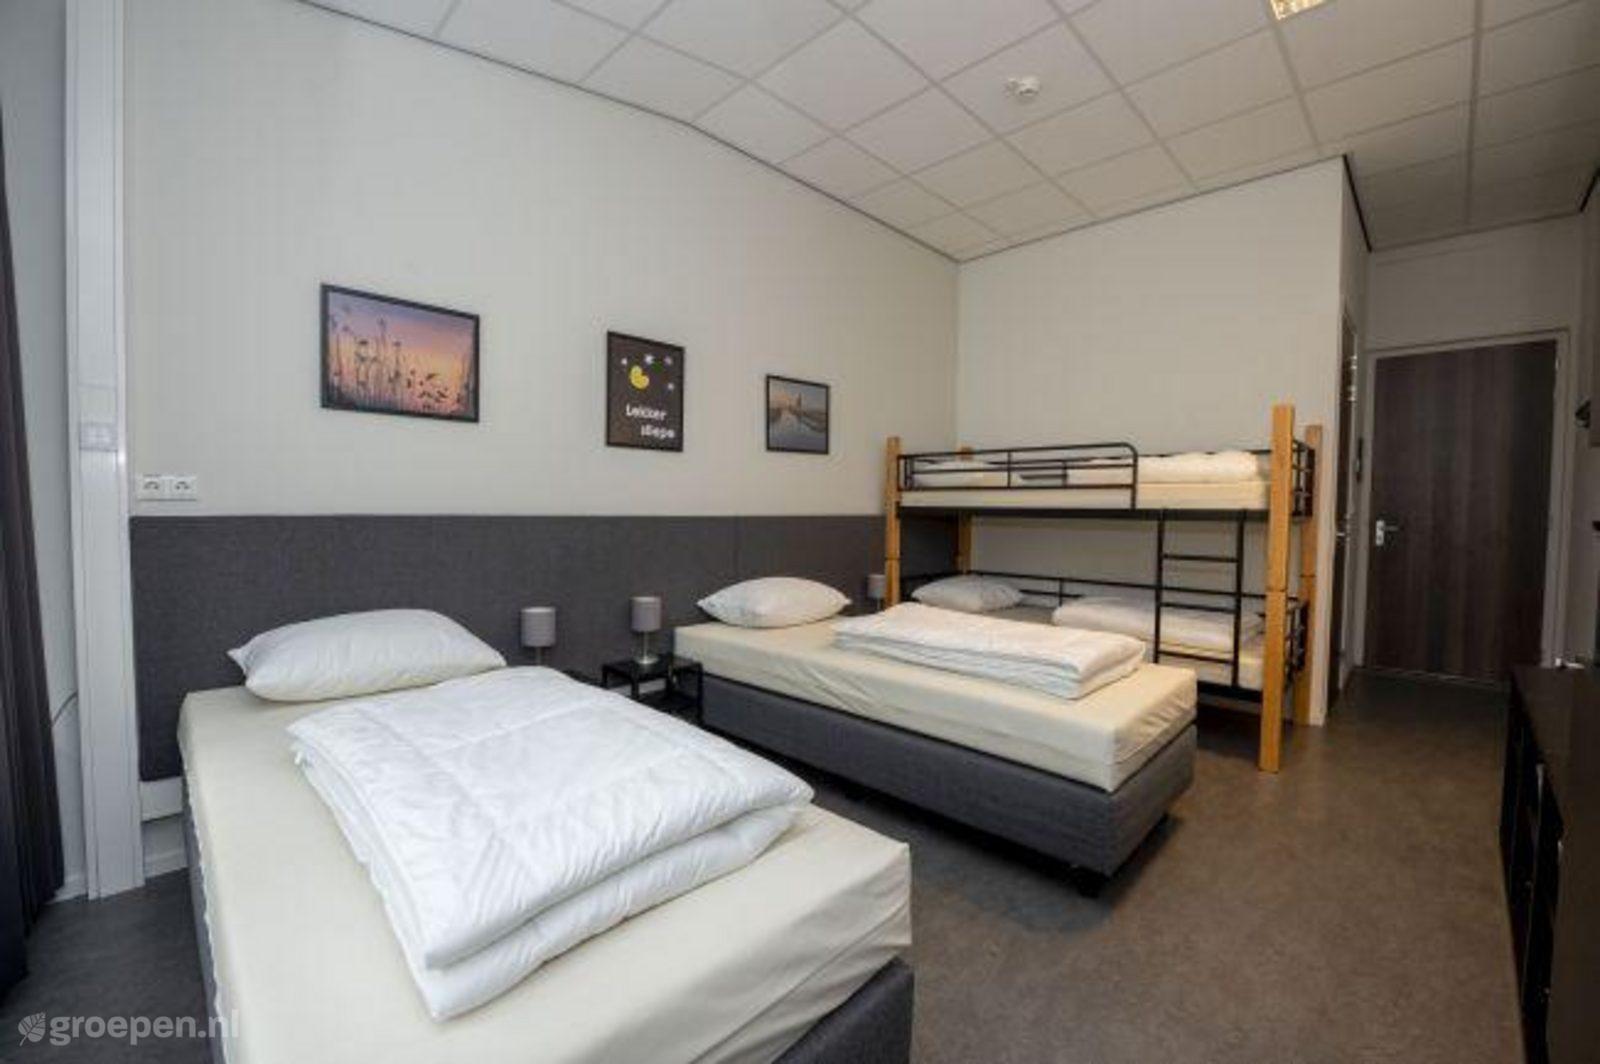 Group accommodation Rijs